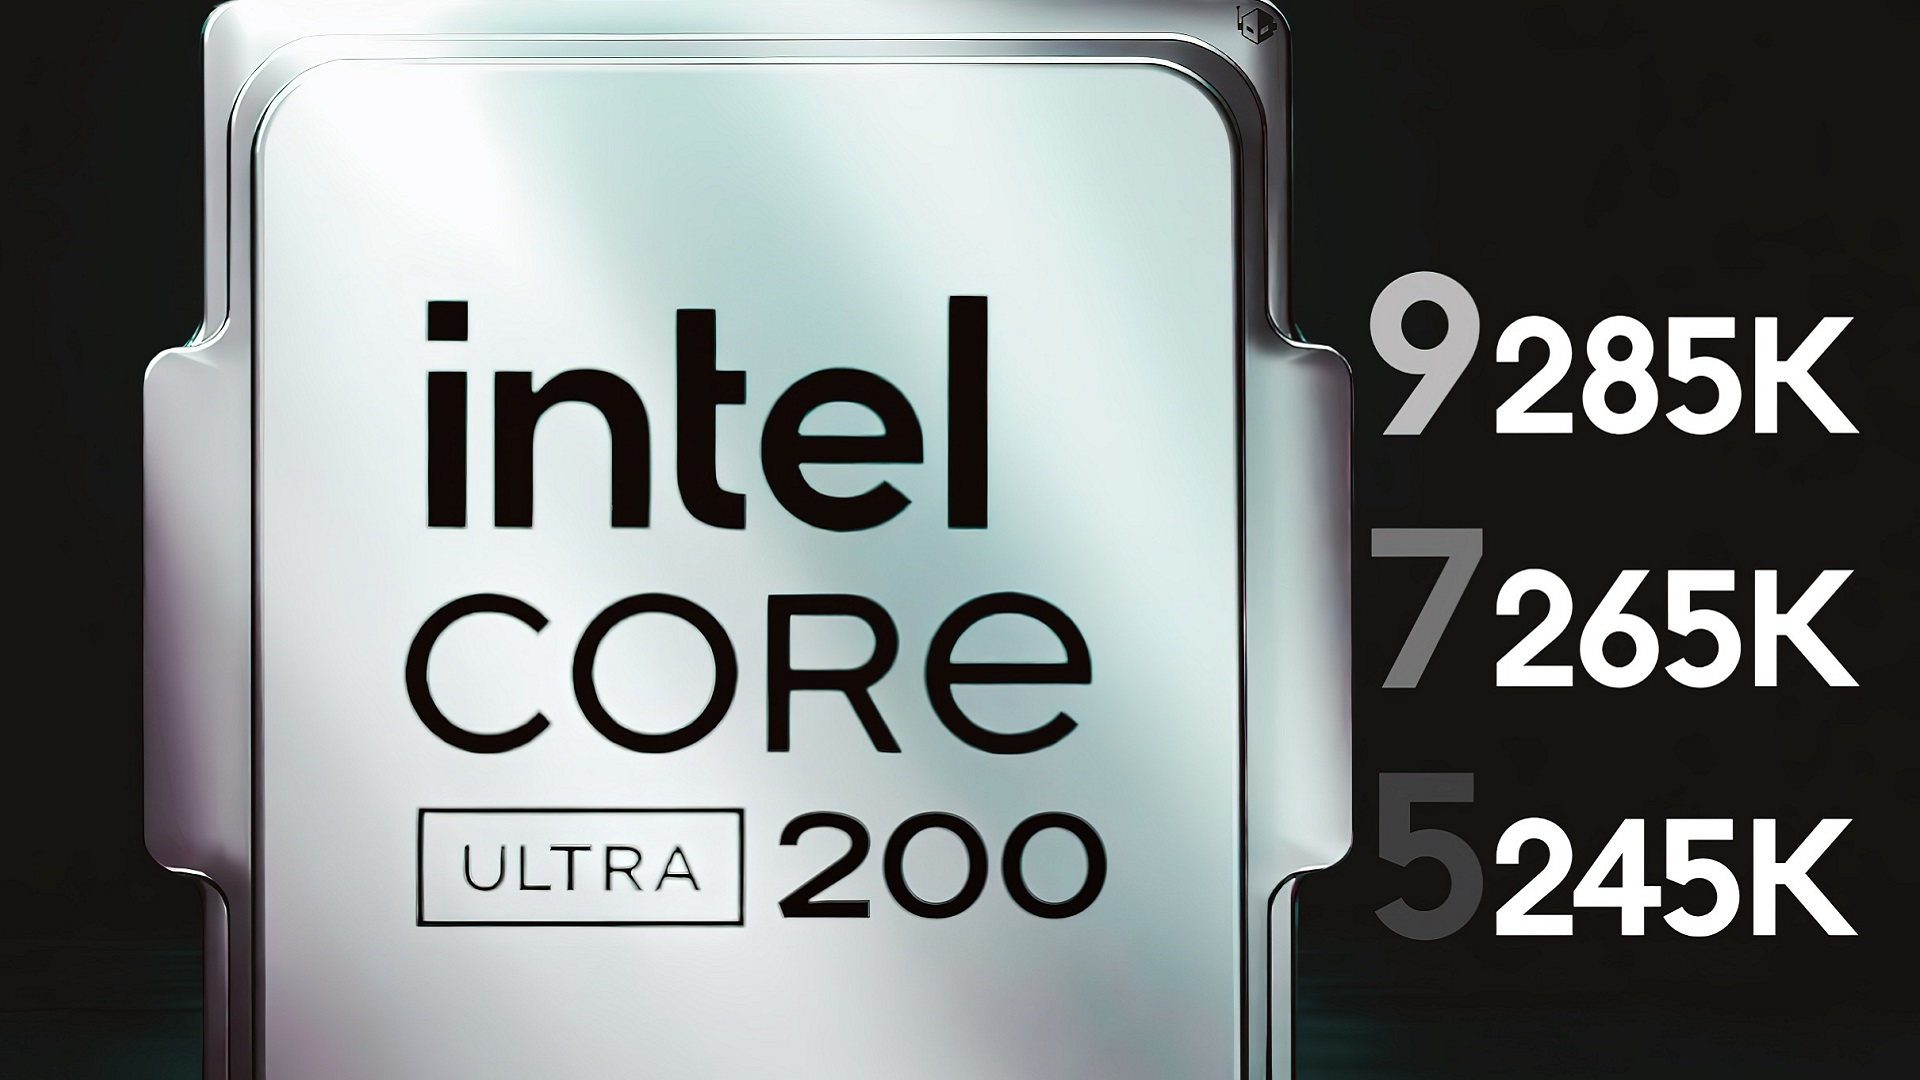 اطلاعات جدیدی از نسل جدید پردازنده های سری Core Ultra 200 منتشر شده است